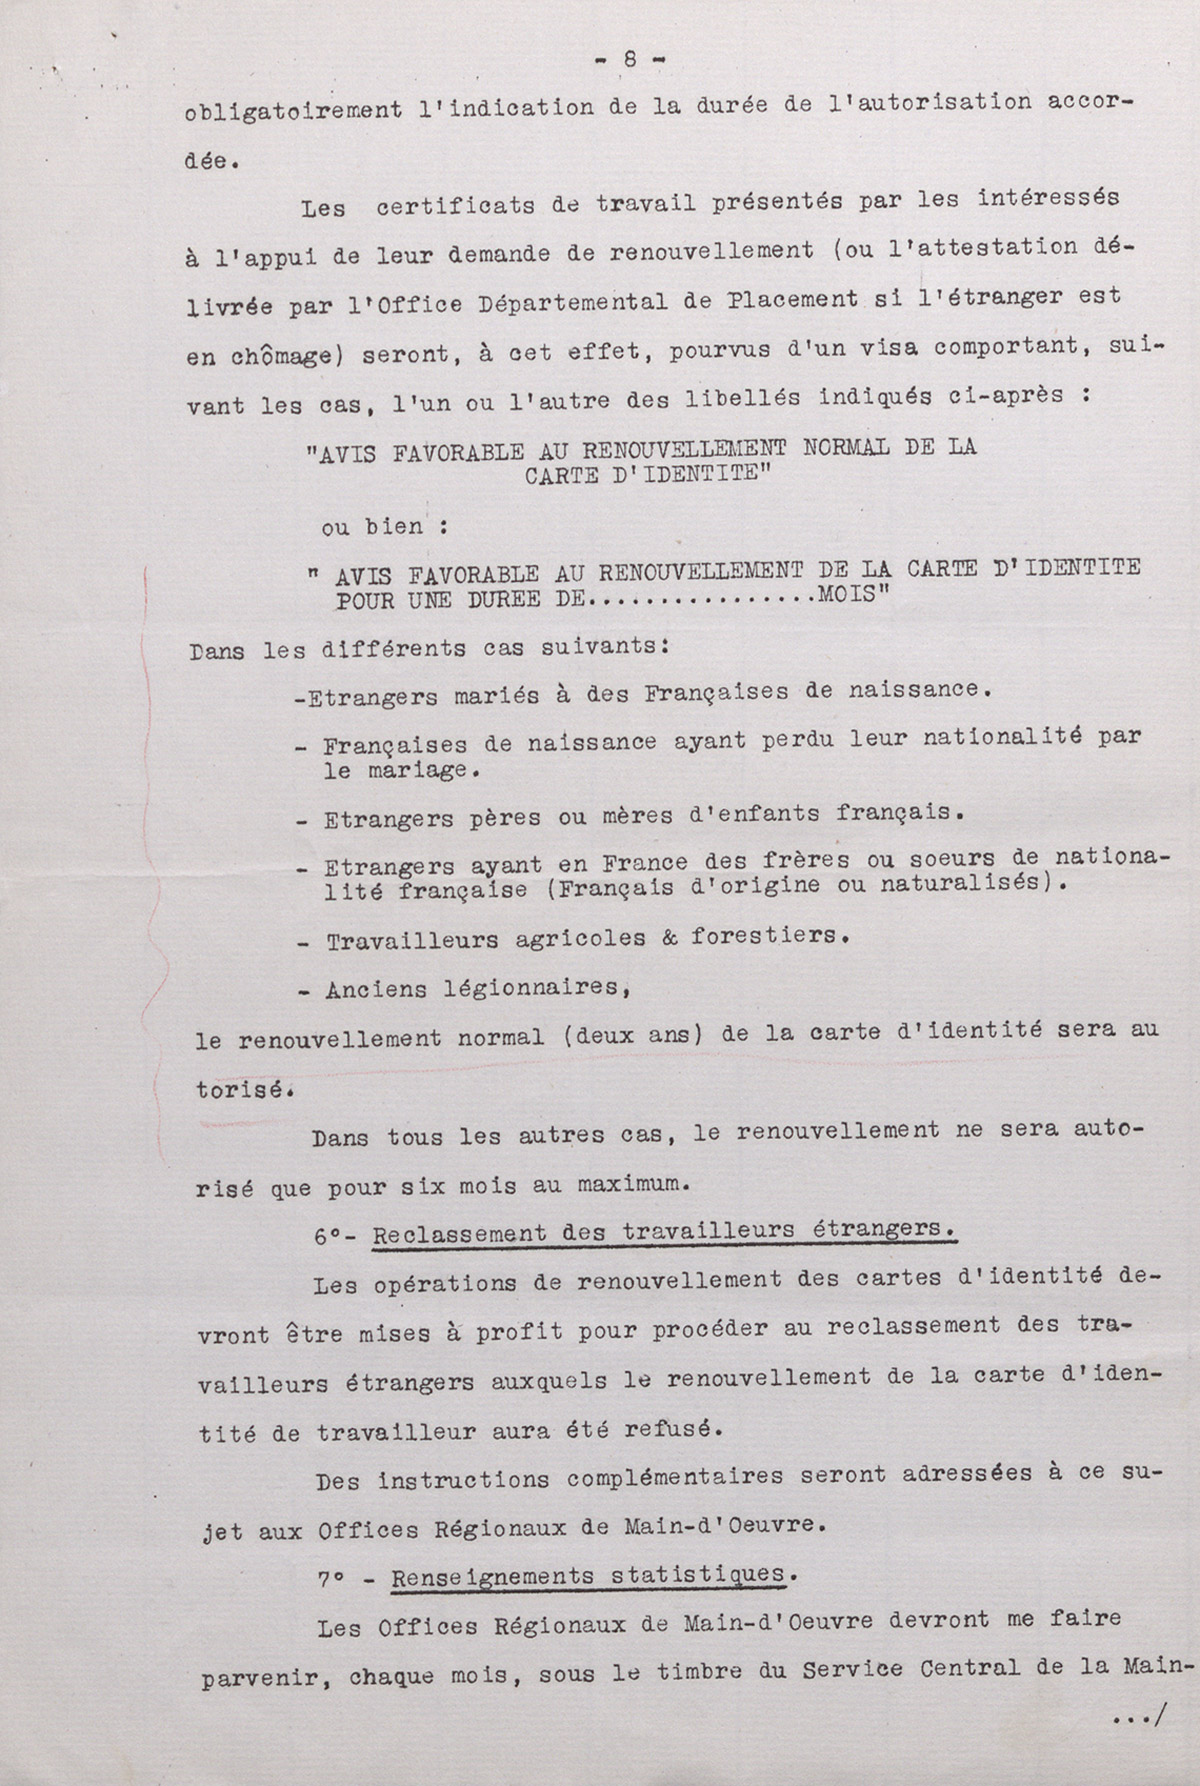 Fiche de renseignements émanant du Ministère du travail accompagnée d'une lettre confidentielle du Ministre du travail sur le renouvellement des cartes d'identité des travailleurs étrangers, 12 février 1935